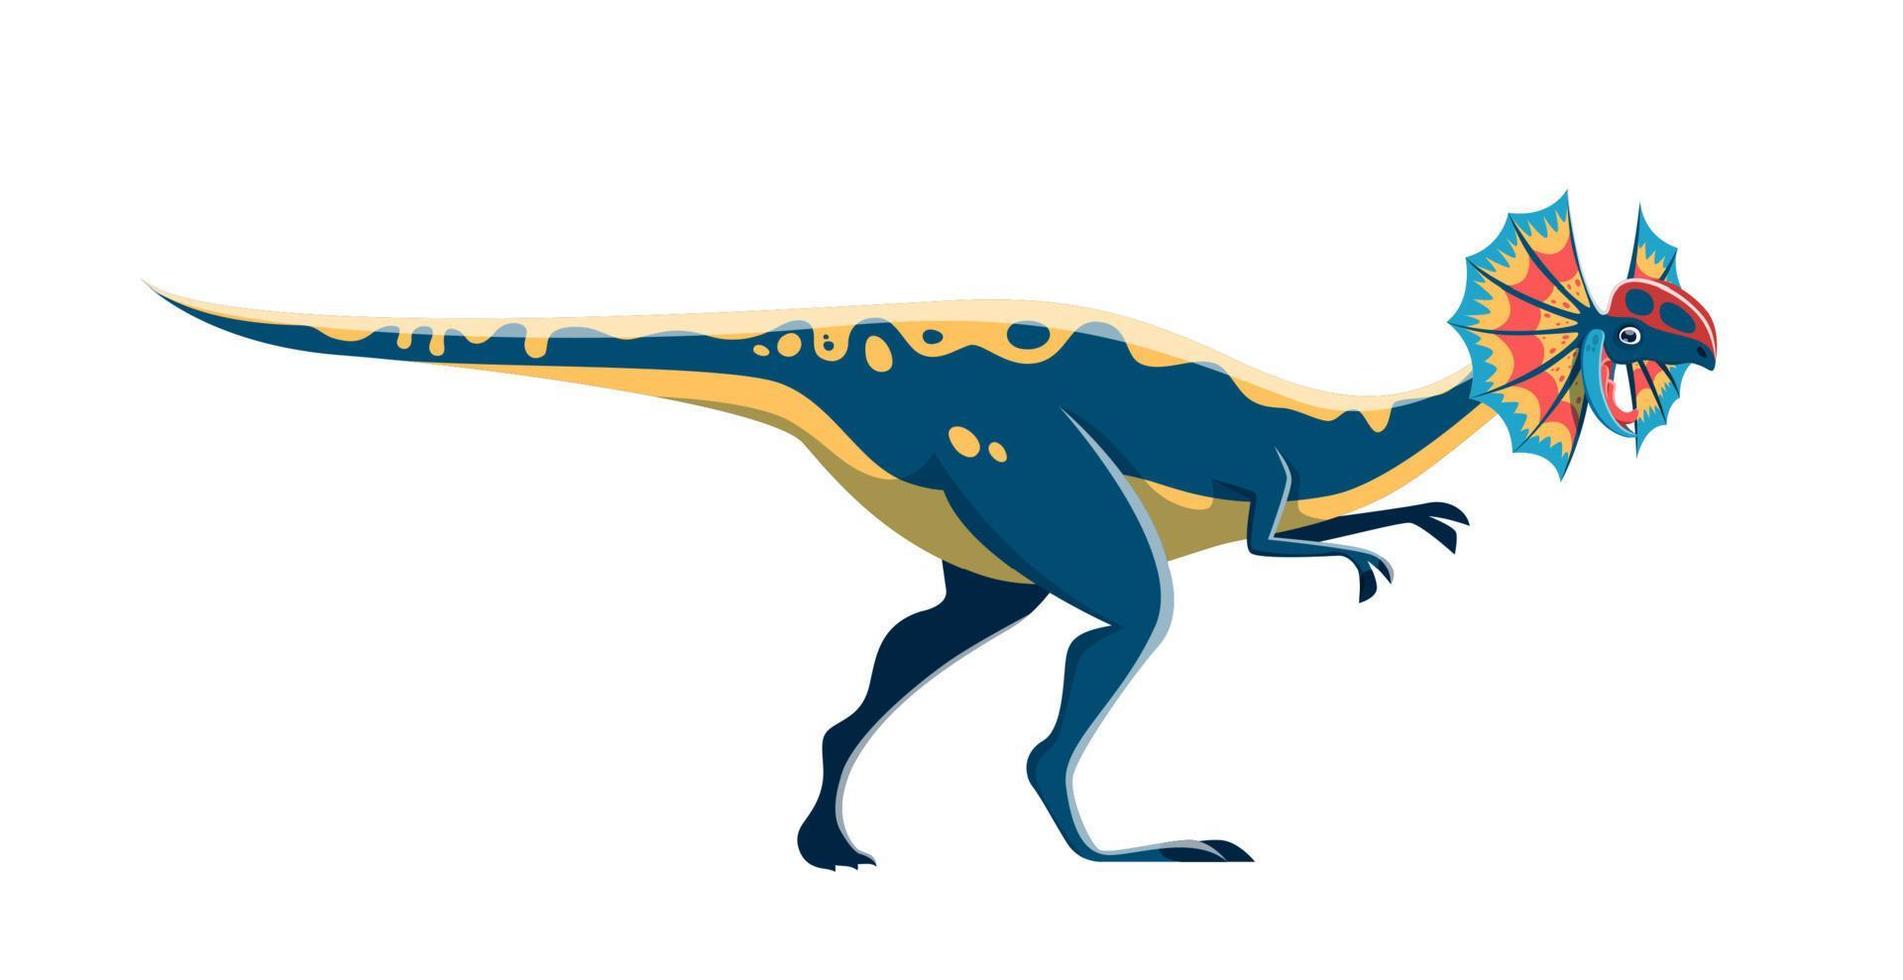 Cartoon Dilophosaurus dinosaur cute character vector